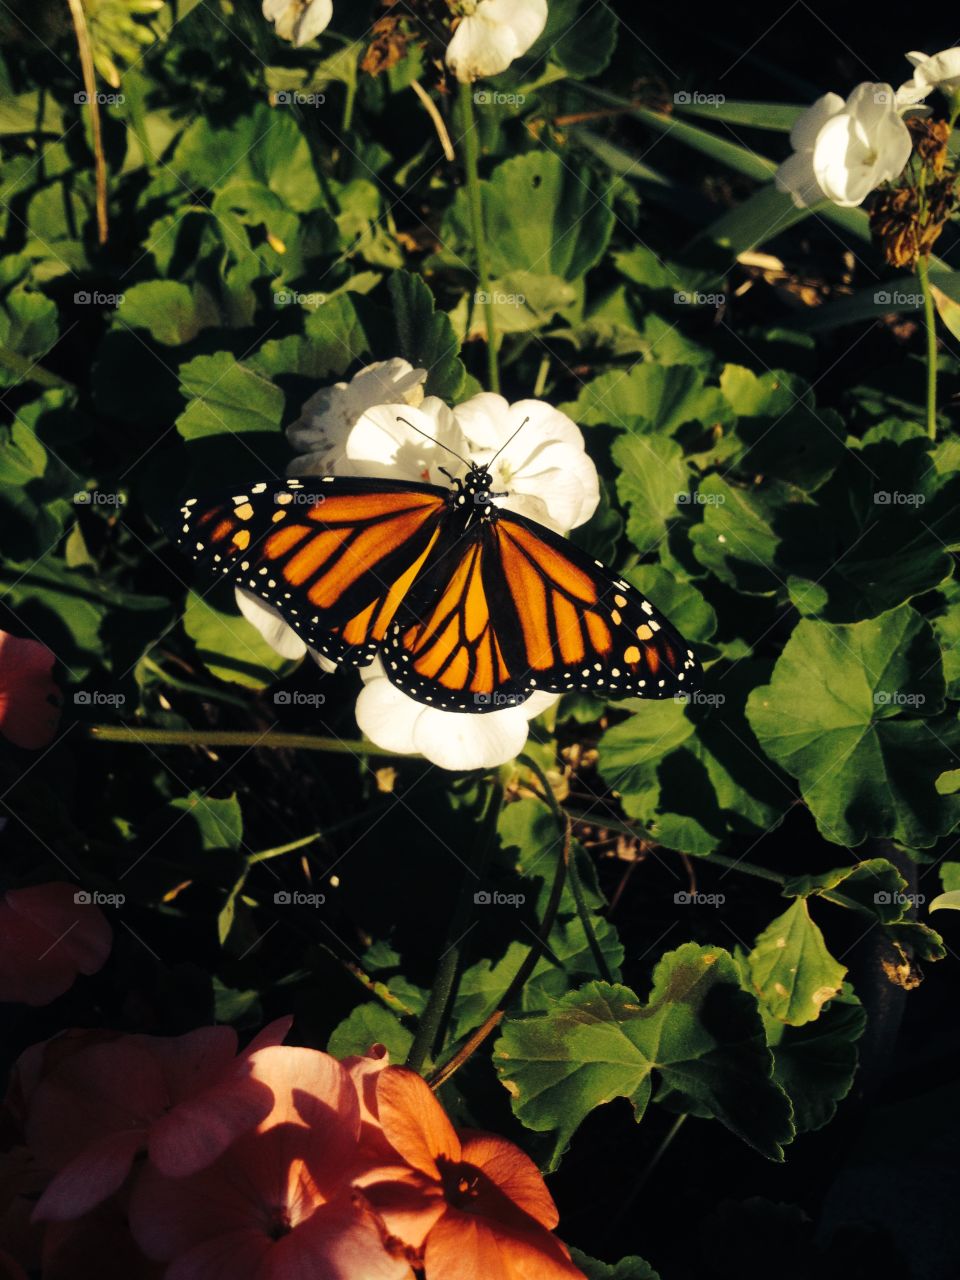 Monarch. Monarch butterfly on a flower